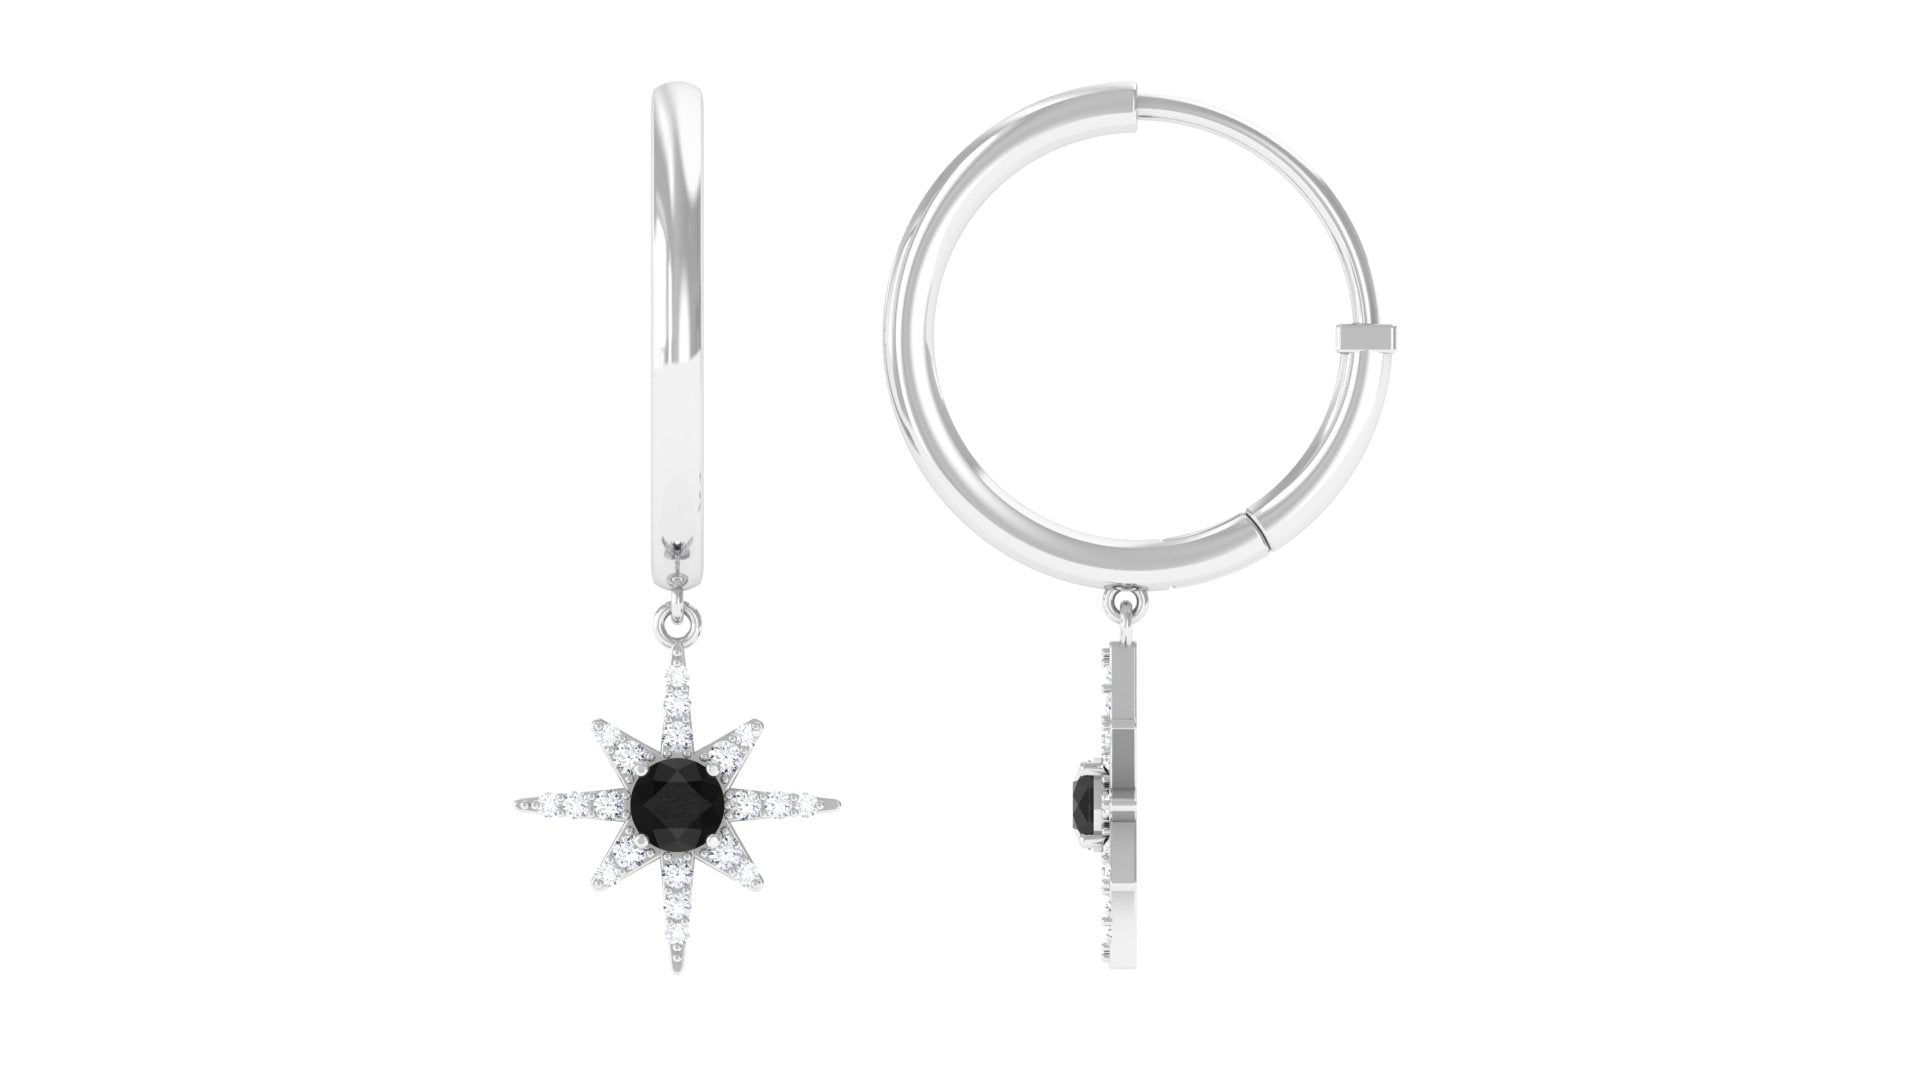 Created Black Diamond and Diamond Sunburst Hoop Earrings Lab Created Black Diamond - ( AAAA ) - Quality - Rosec Jewels